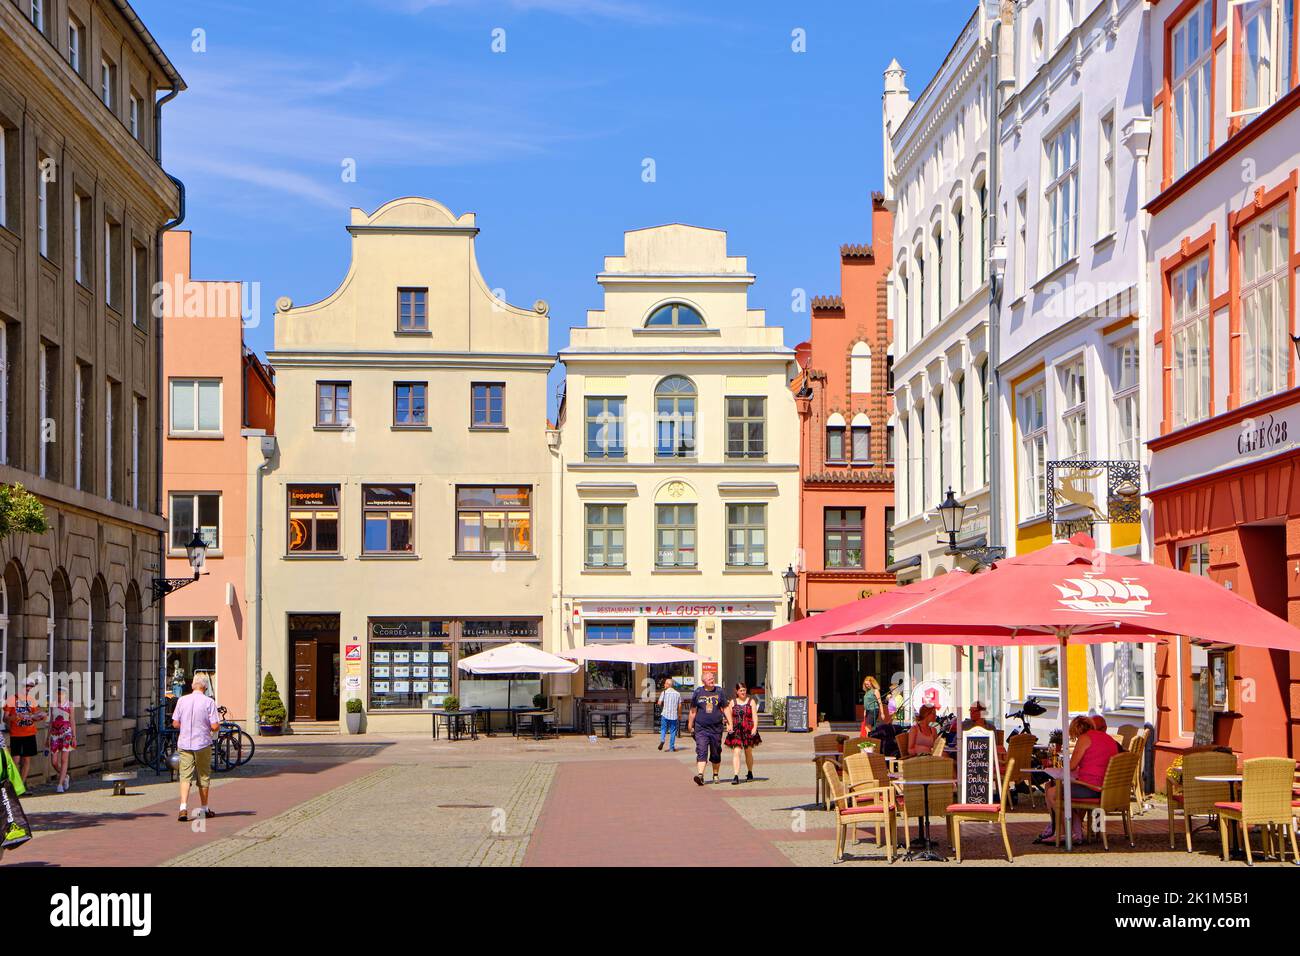 Streetscape e animare la scena quotidiana, città anseatica di Wismar, Meclemburgo-Pomerania occidentale, Germania, Europa, agosto 8, 2020. Foto Stock